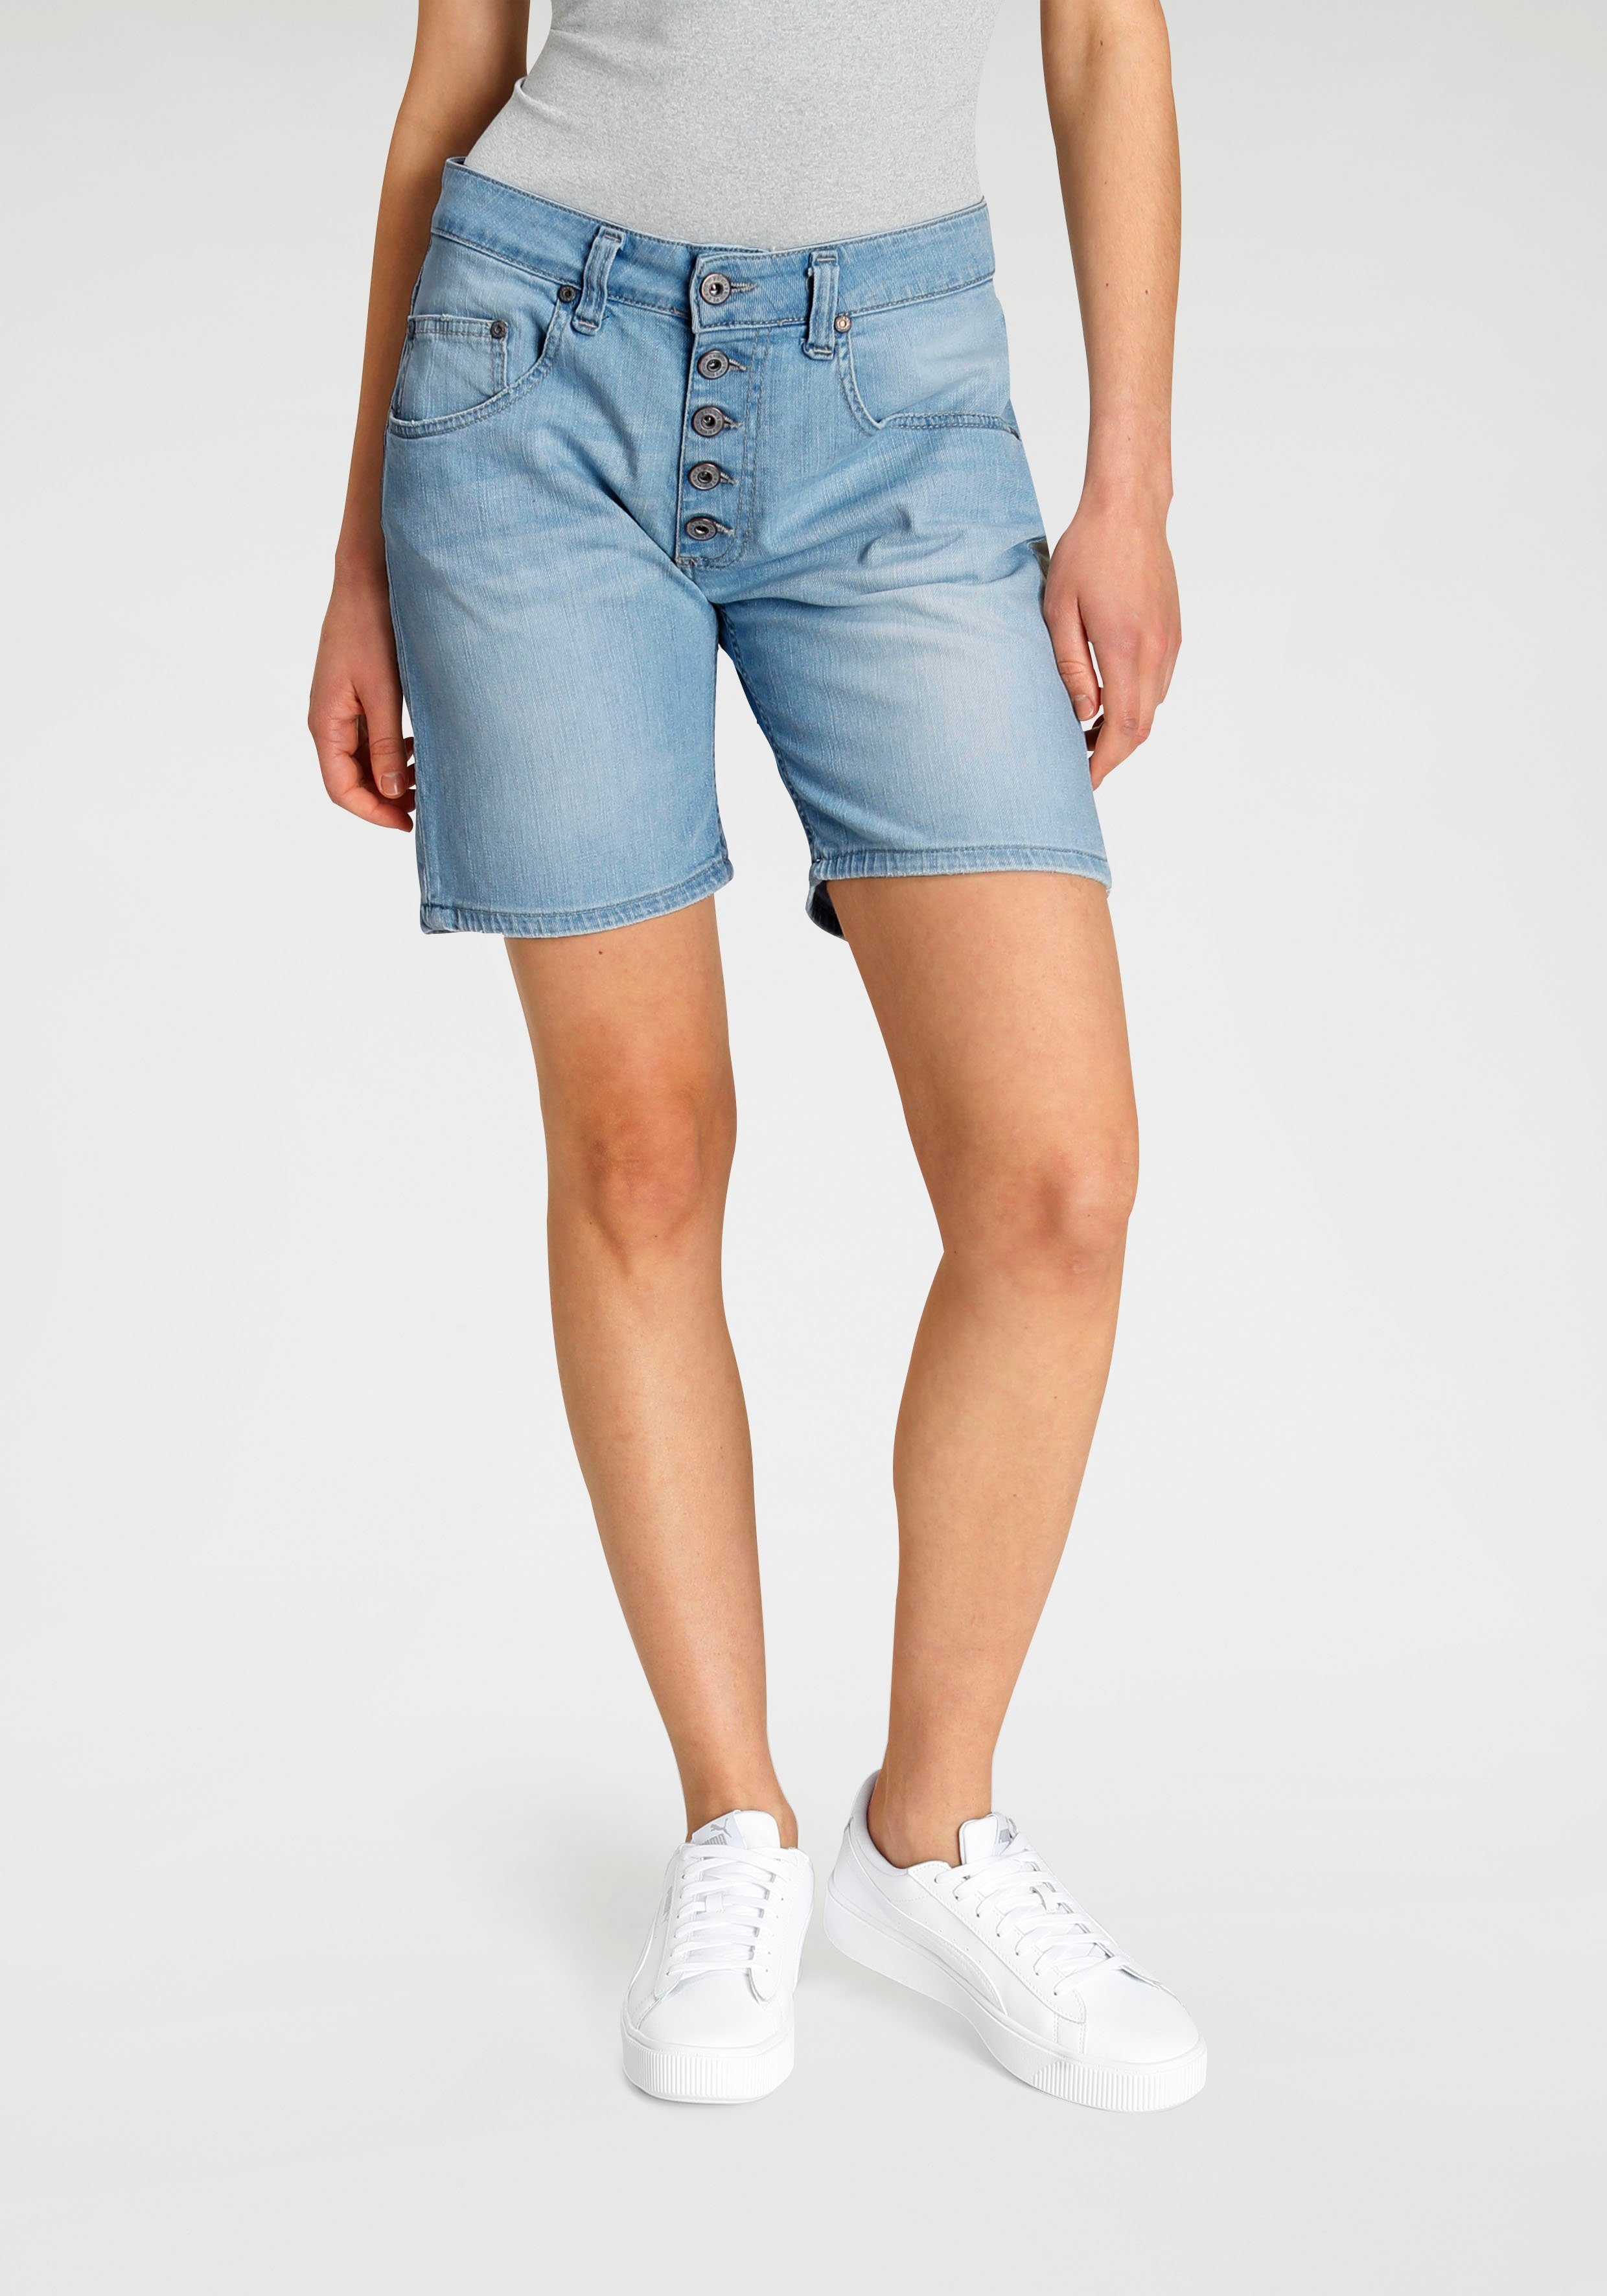 Please Jeans Jeansbermudas »P88A« mit sichtbarer Button-Fly Leiste vorn  online kaufen | OTTO